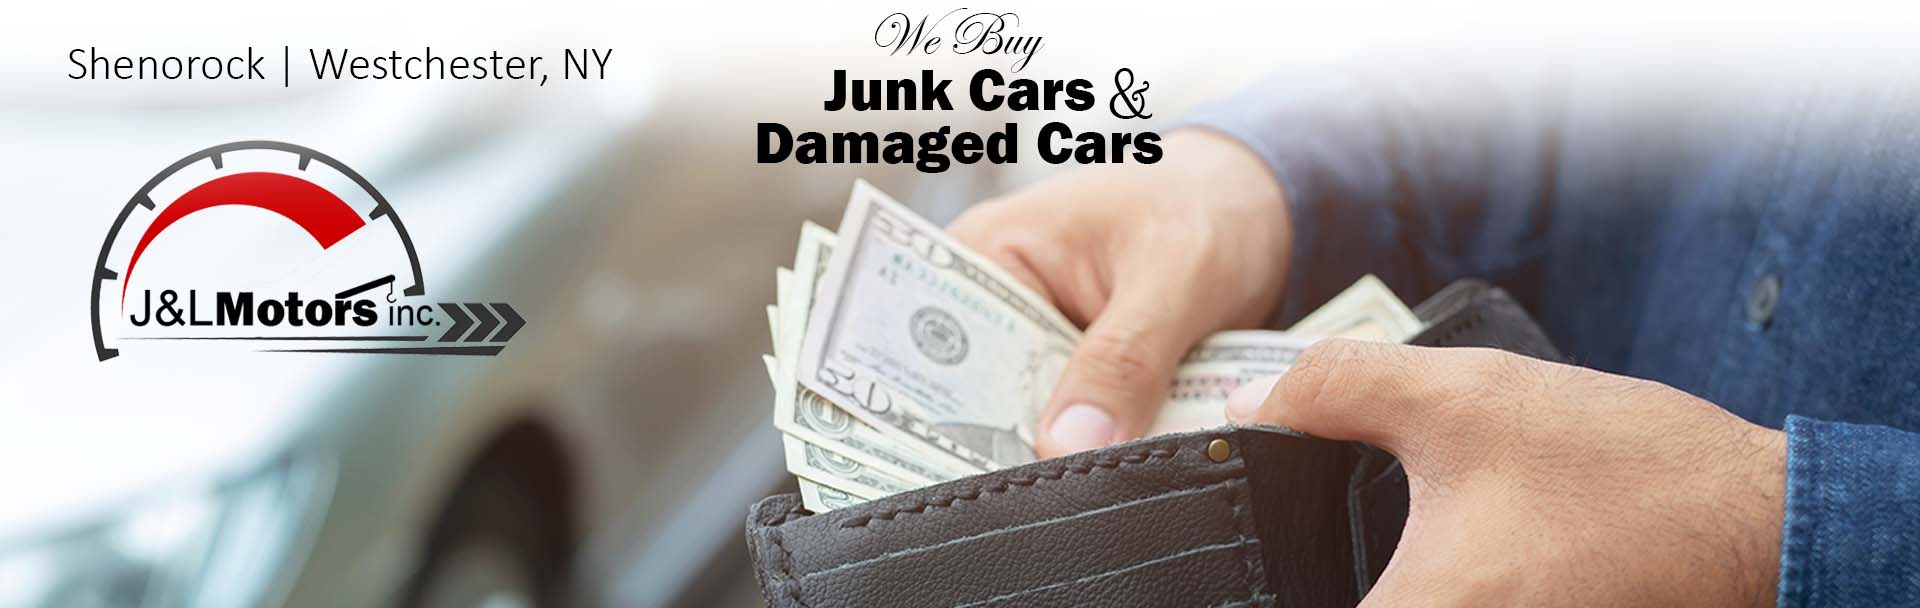 Sell Damaged Cars, We Buy Damaged Cars